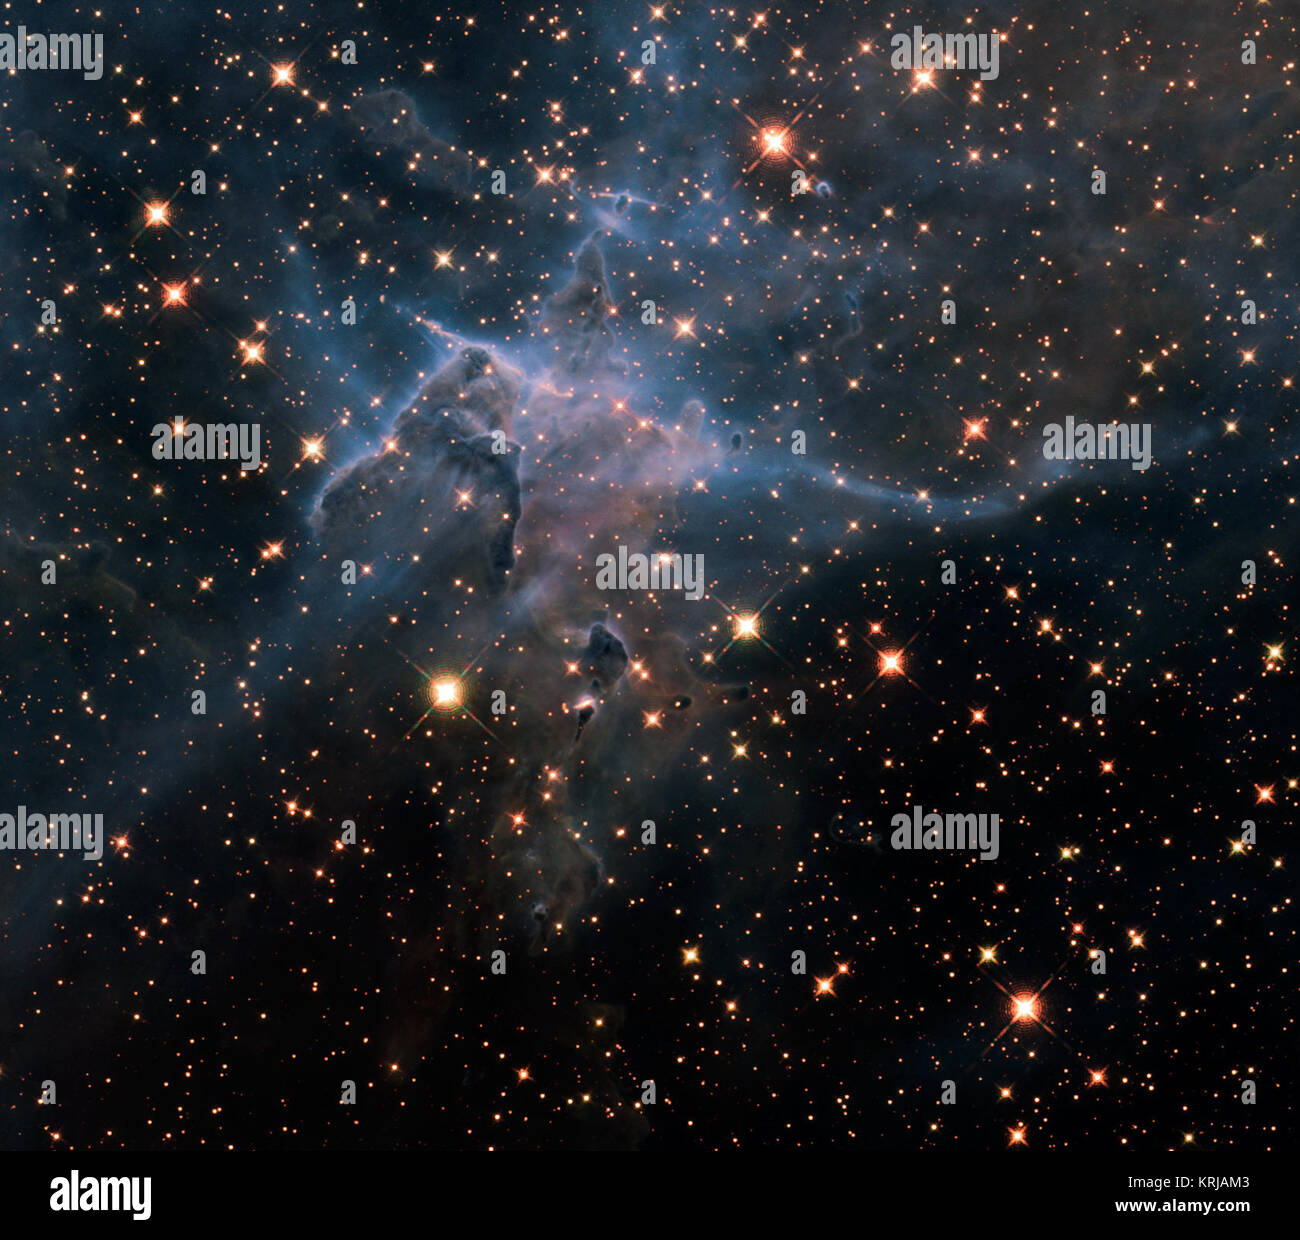 NASA IMAGE release April 23, 2010 Dies ist eine NASA-Hubble-Weltraumteleskop in der Nähe - IR-Licht Bild von drei - Licht - hohen Säule aus Gas und Staub, die sich von den brillanten Licht in der Nähe von Sternen in der stürmischen stellare Kinderstube die Carina Nebula, entfernt 7.500 Lichtjahren im südlichen Sternbild Carina genannt gegessen wird. Das Bild markiert den 20. Jahrestag von Hubbles starten und die Bereitstellung in einer Umlaufbahn um die Erde. Das Bild zeigt eine Fülle von Stars hinter den gasförmigen Schleier der Wand des Nebels von Wasserstoff, geschnürt mit Staub. Im Vordergrund Säule wird semi-transpa Stockfoto